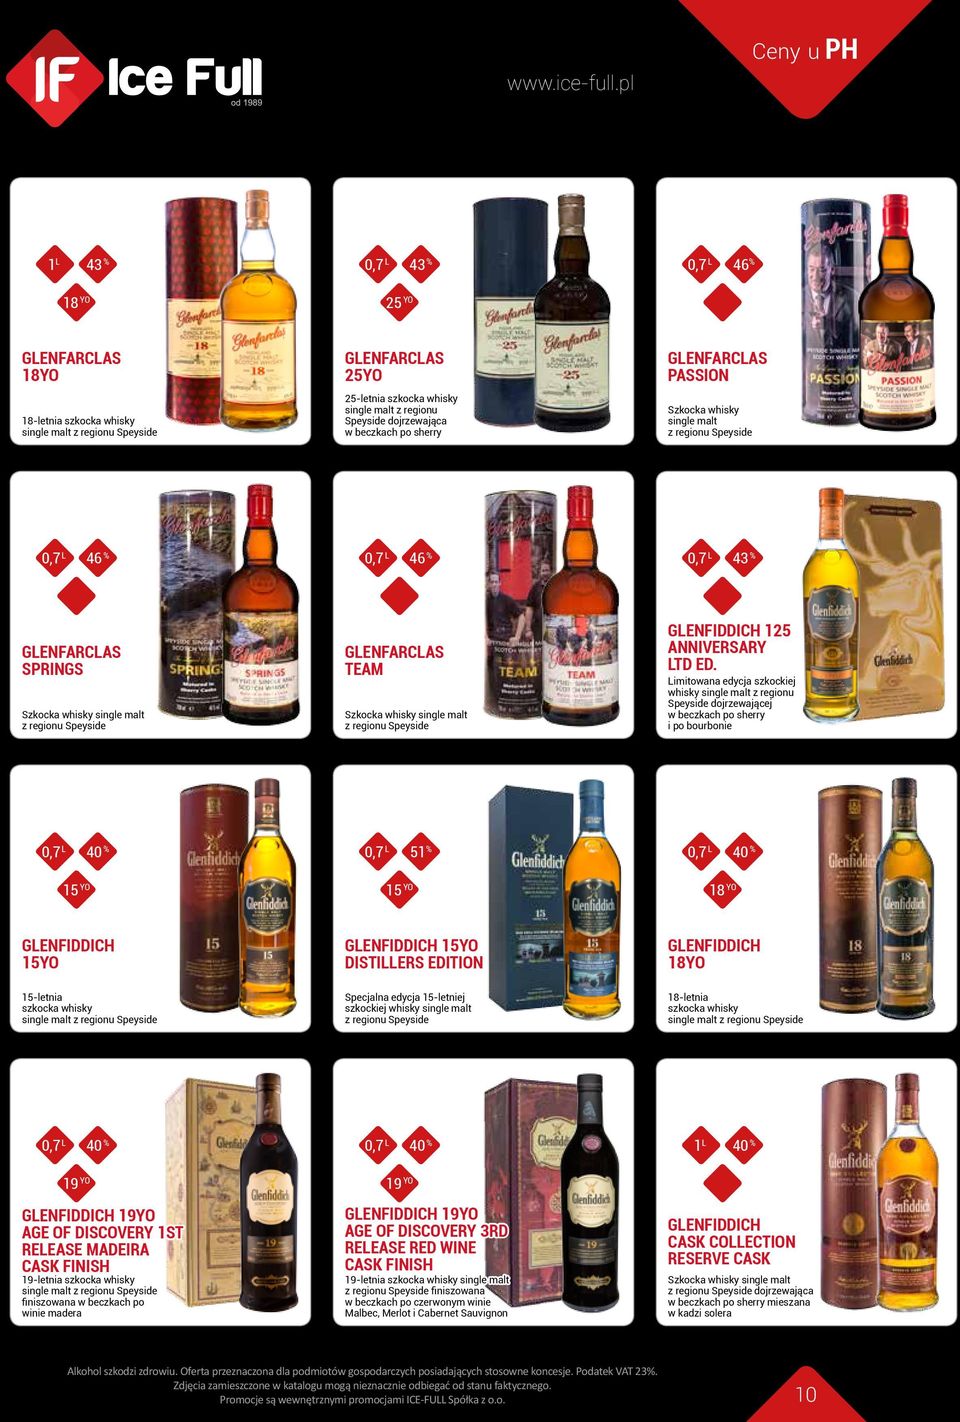 Limitowana edycja szkockiej whisky z regionu Speyside dojrzewającej w beczkach po sherry i po bourbonie 0,7 L 51 % 15 YO 15 YO 18 YO GLENFIDDICH 15YO GLENFIDDICH 15YO DISTILLERS EDITION GLENFIDDICH